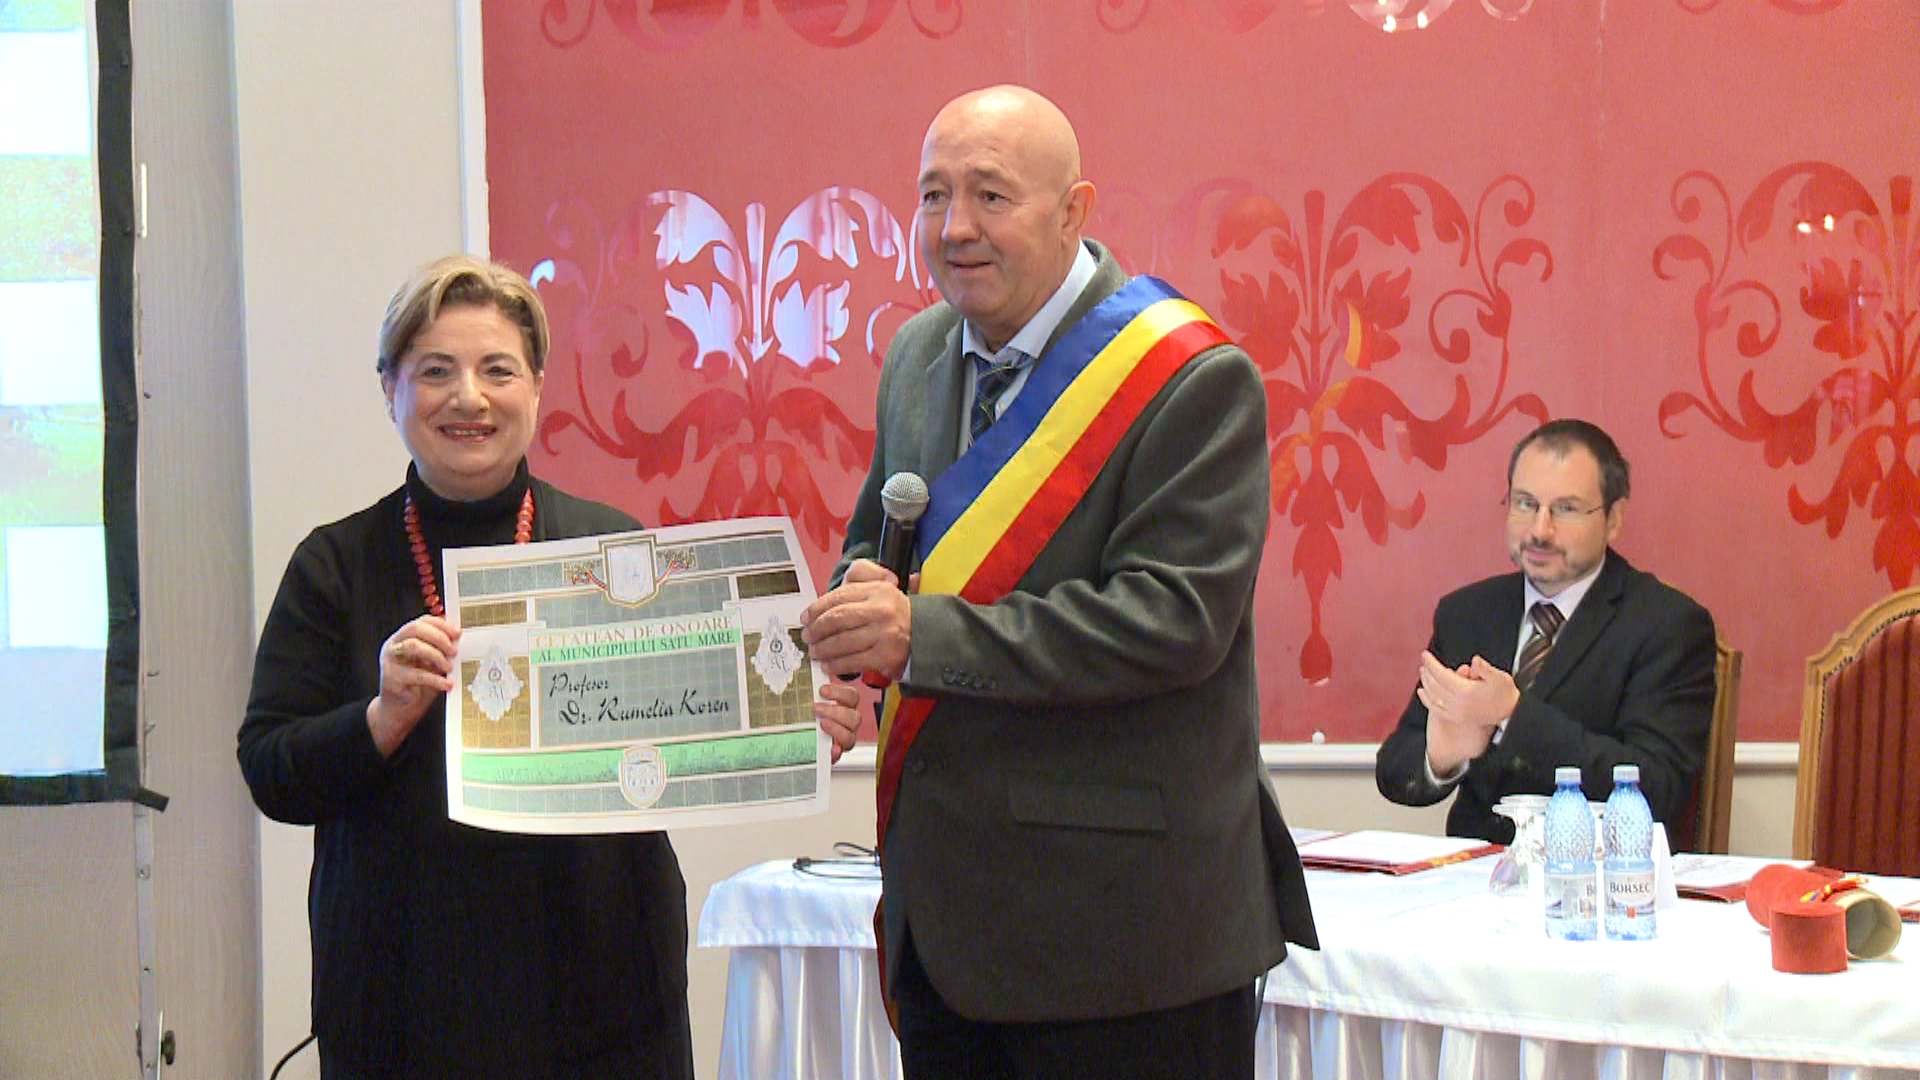 Prof. dr. Rumelia Koren a primit titlul de Cetăţean de Onoare